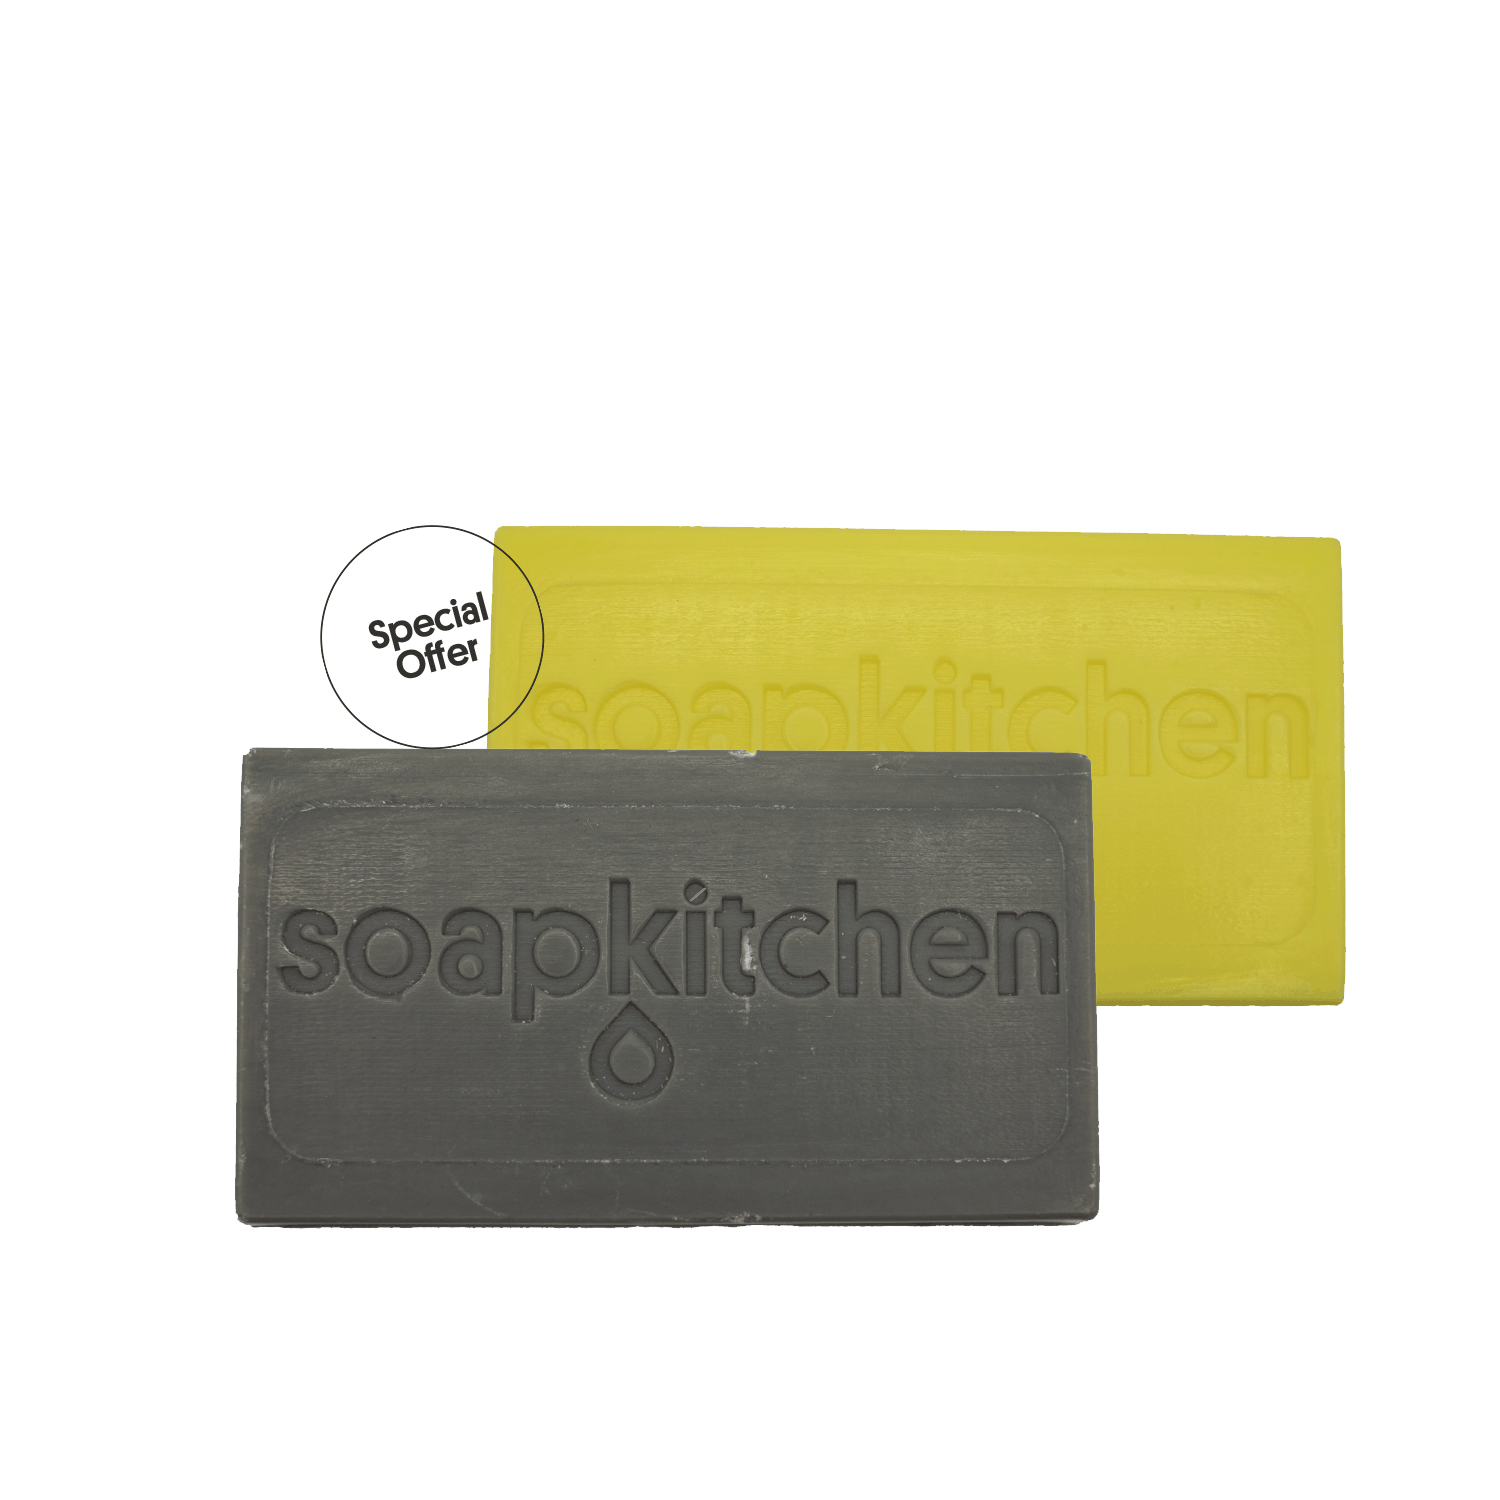 Soapkitchen limitierte Auflage - SOAP BAR PACK - Ingwer Limette & schwarzer Granatapfel